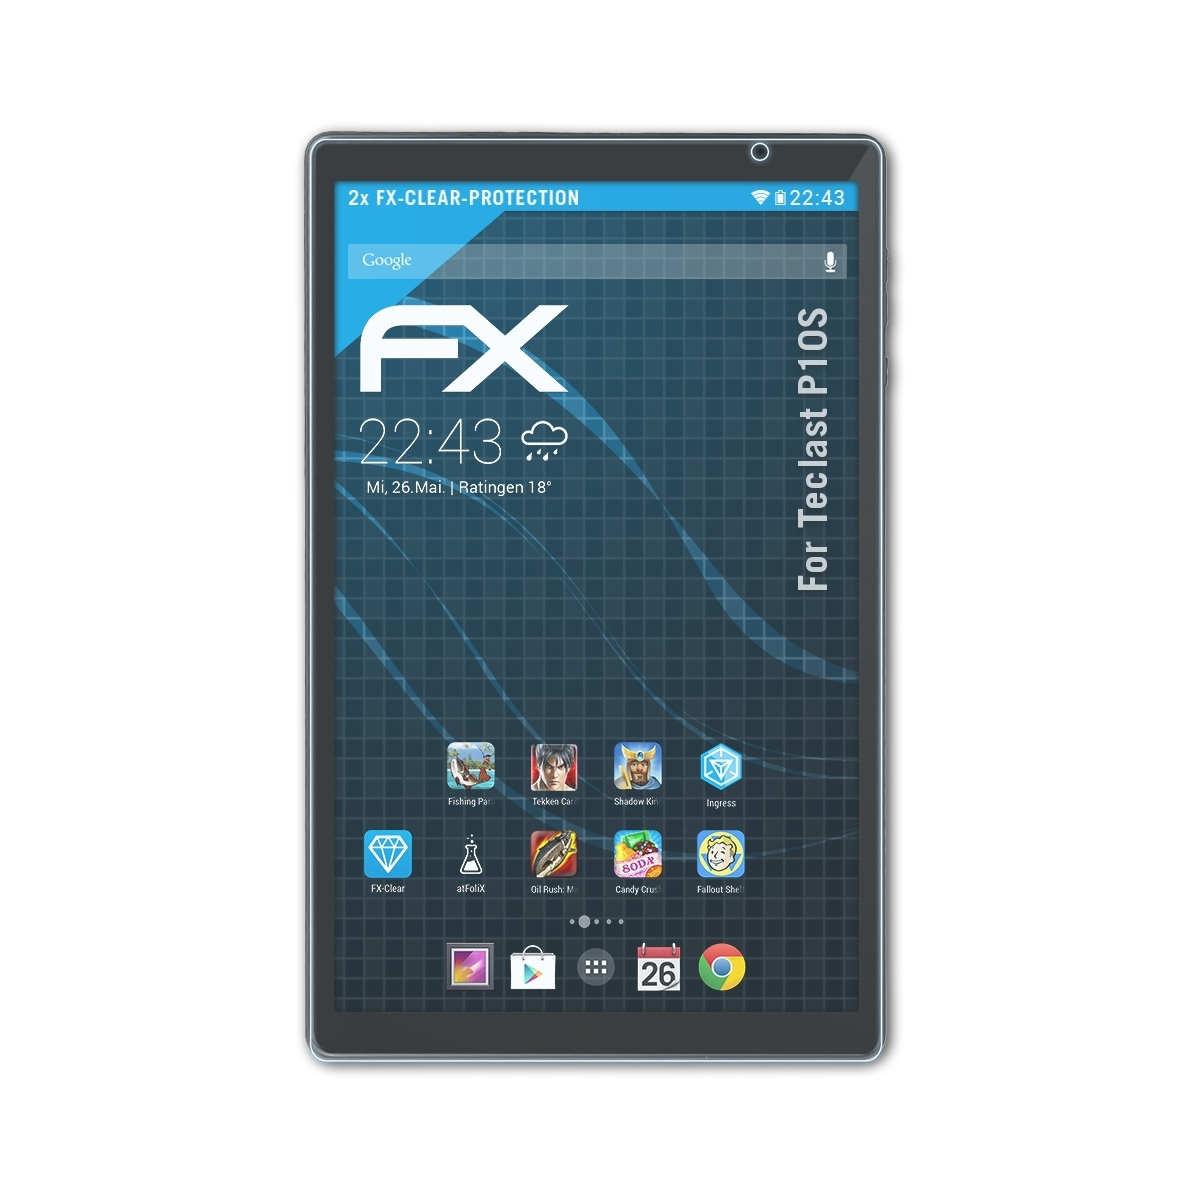 2x Displayschutz(für ATFOLIX P10S) Teclast FX-Clear